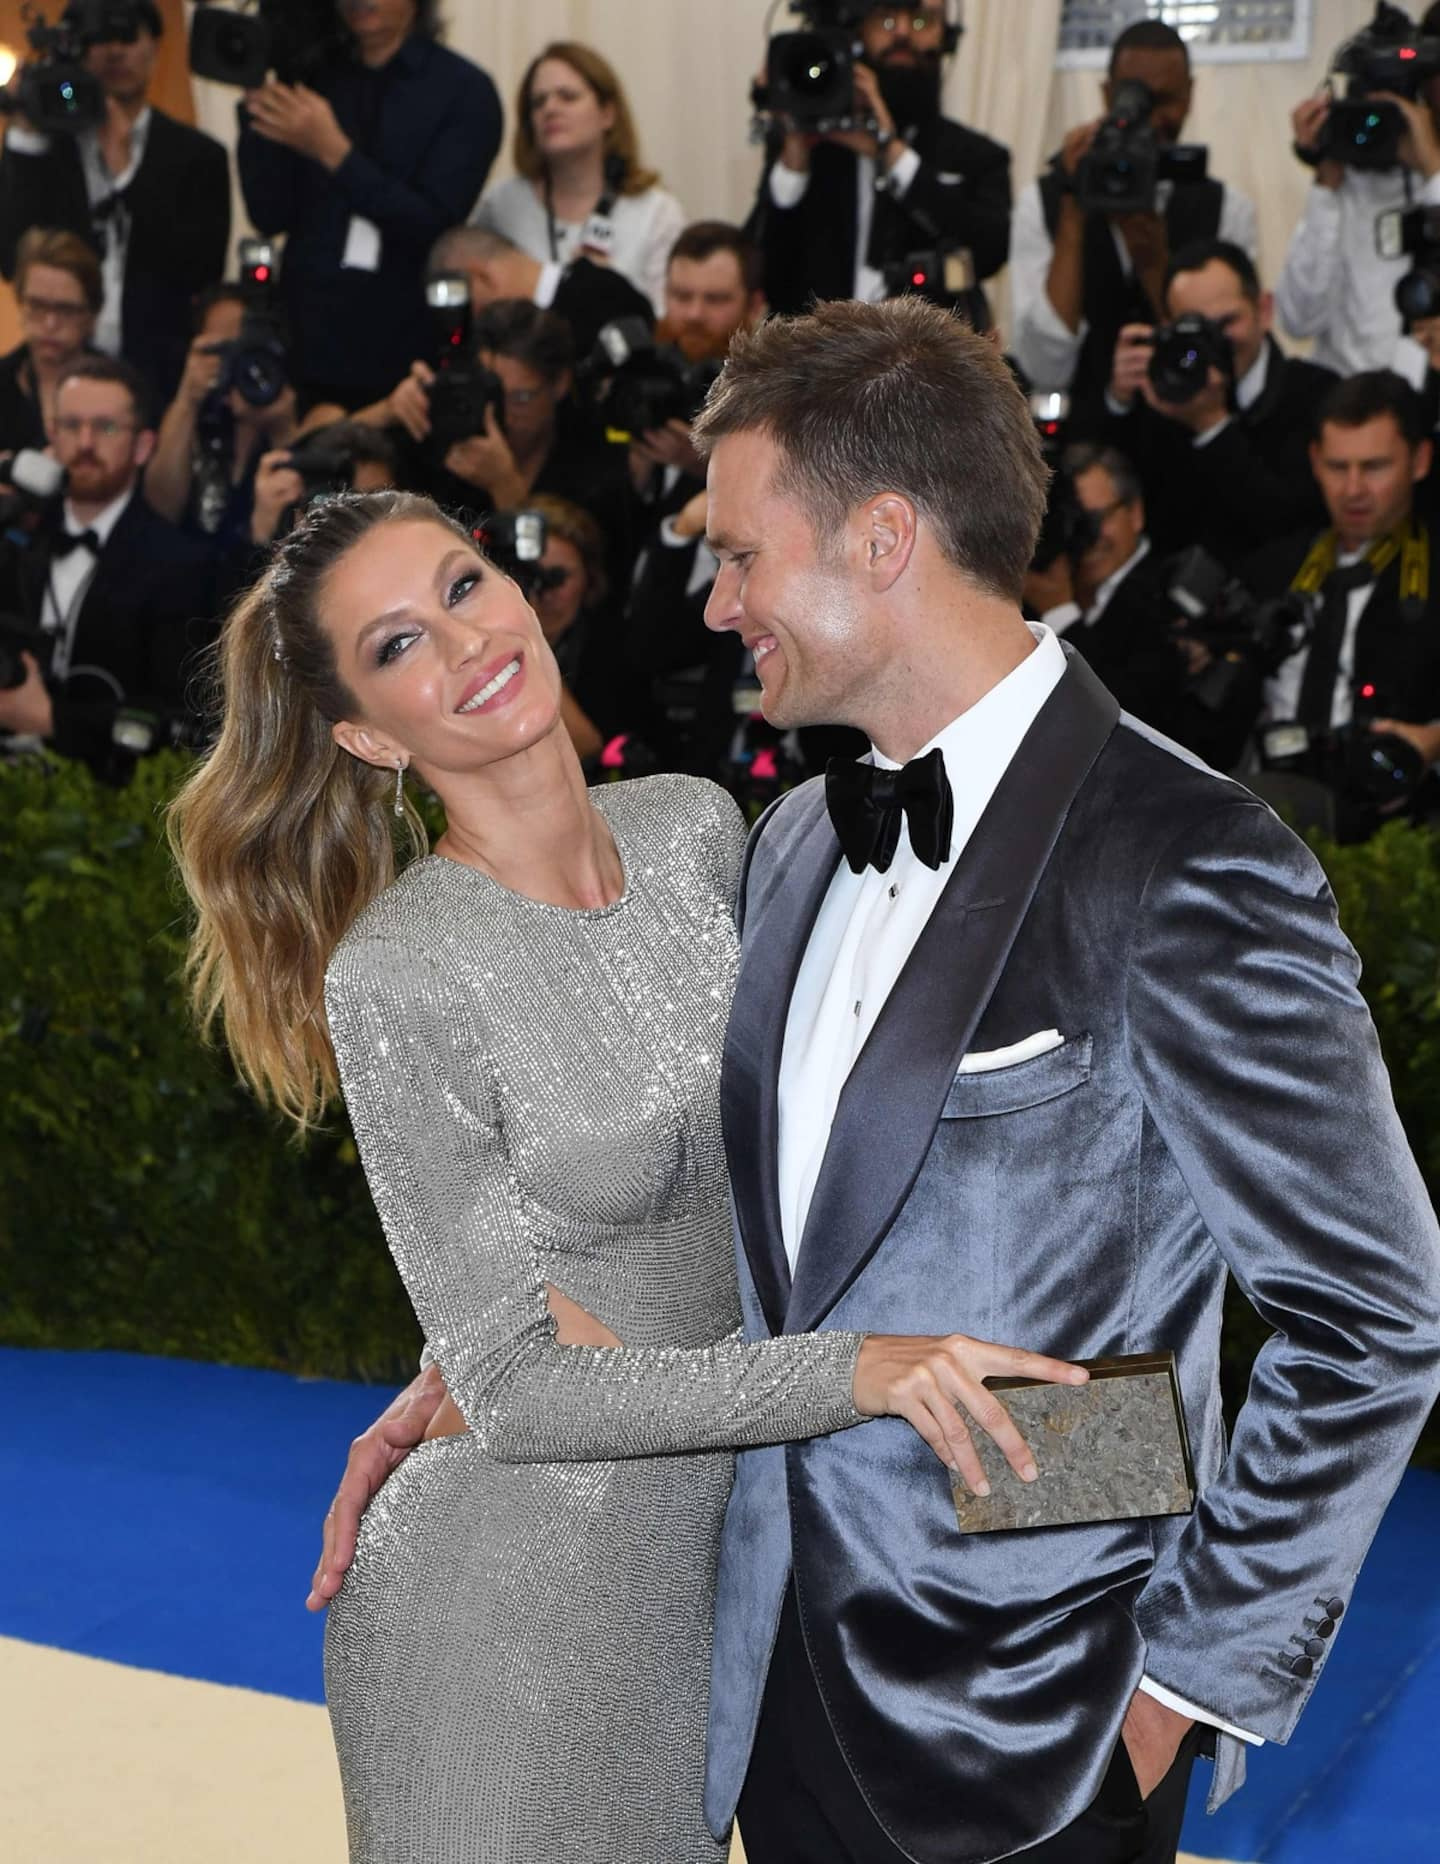 Nearly $1 billion to split in Tom Brady and Gisele Bündchen's divorce